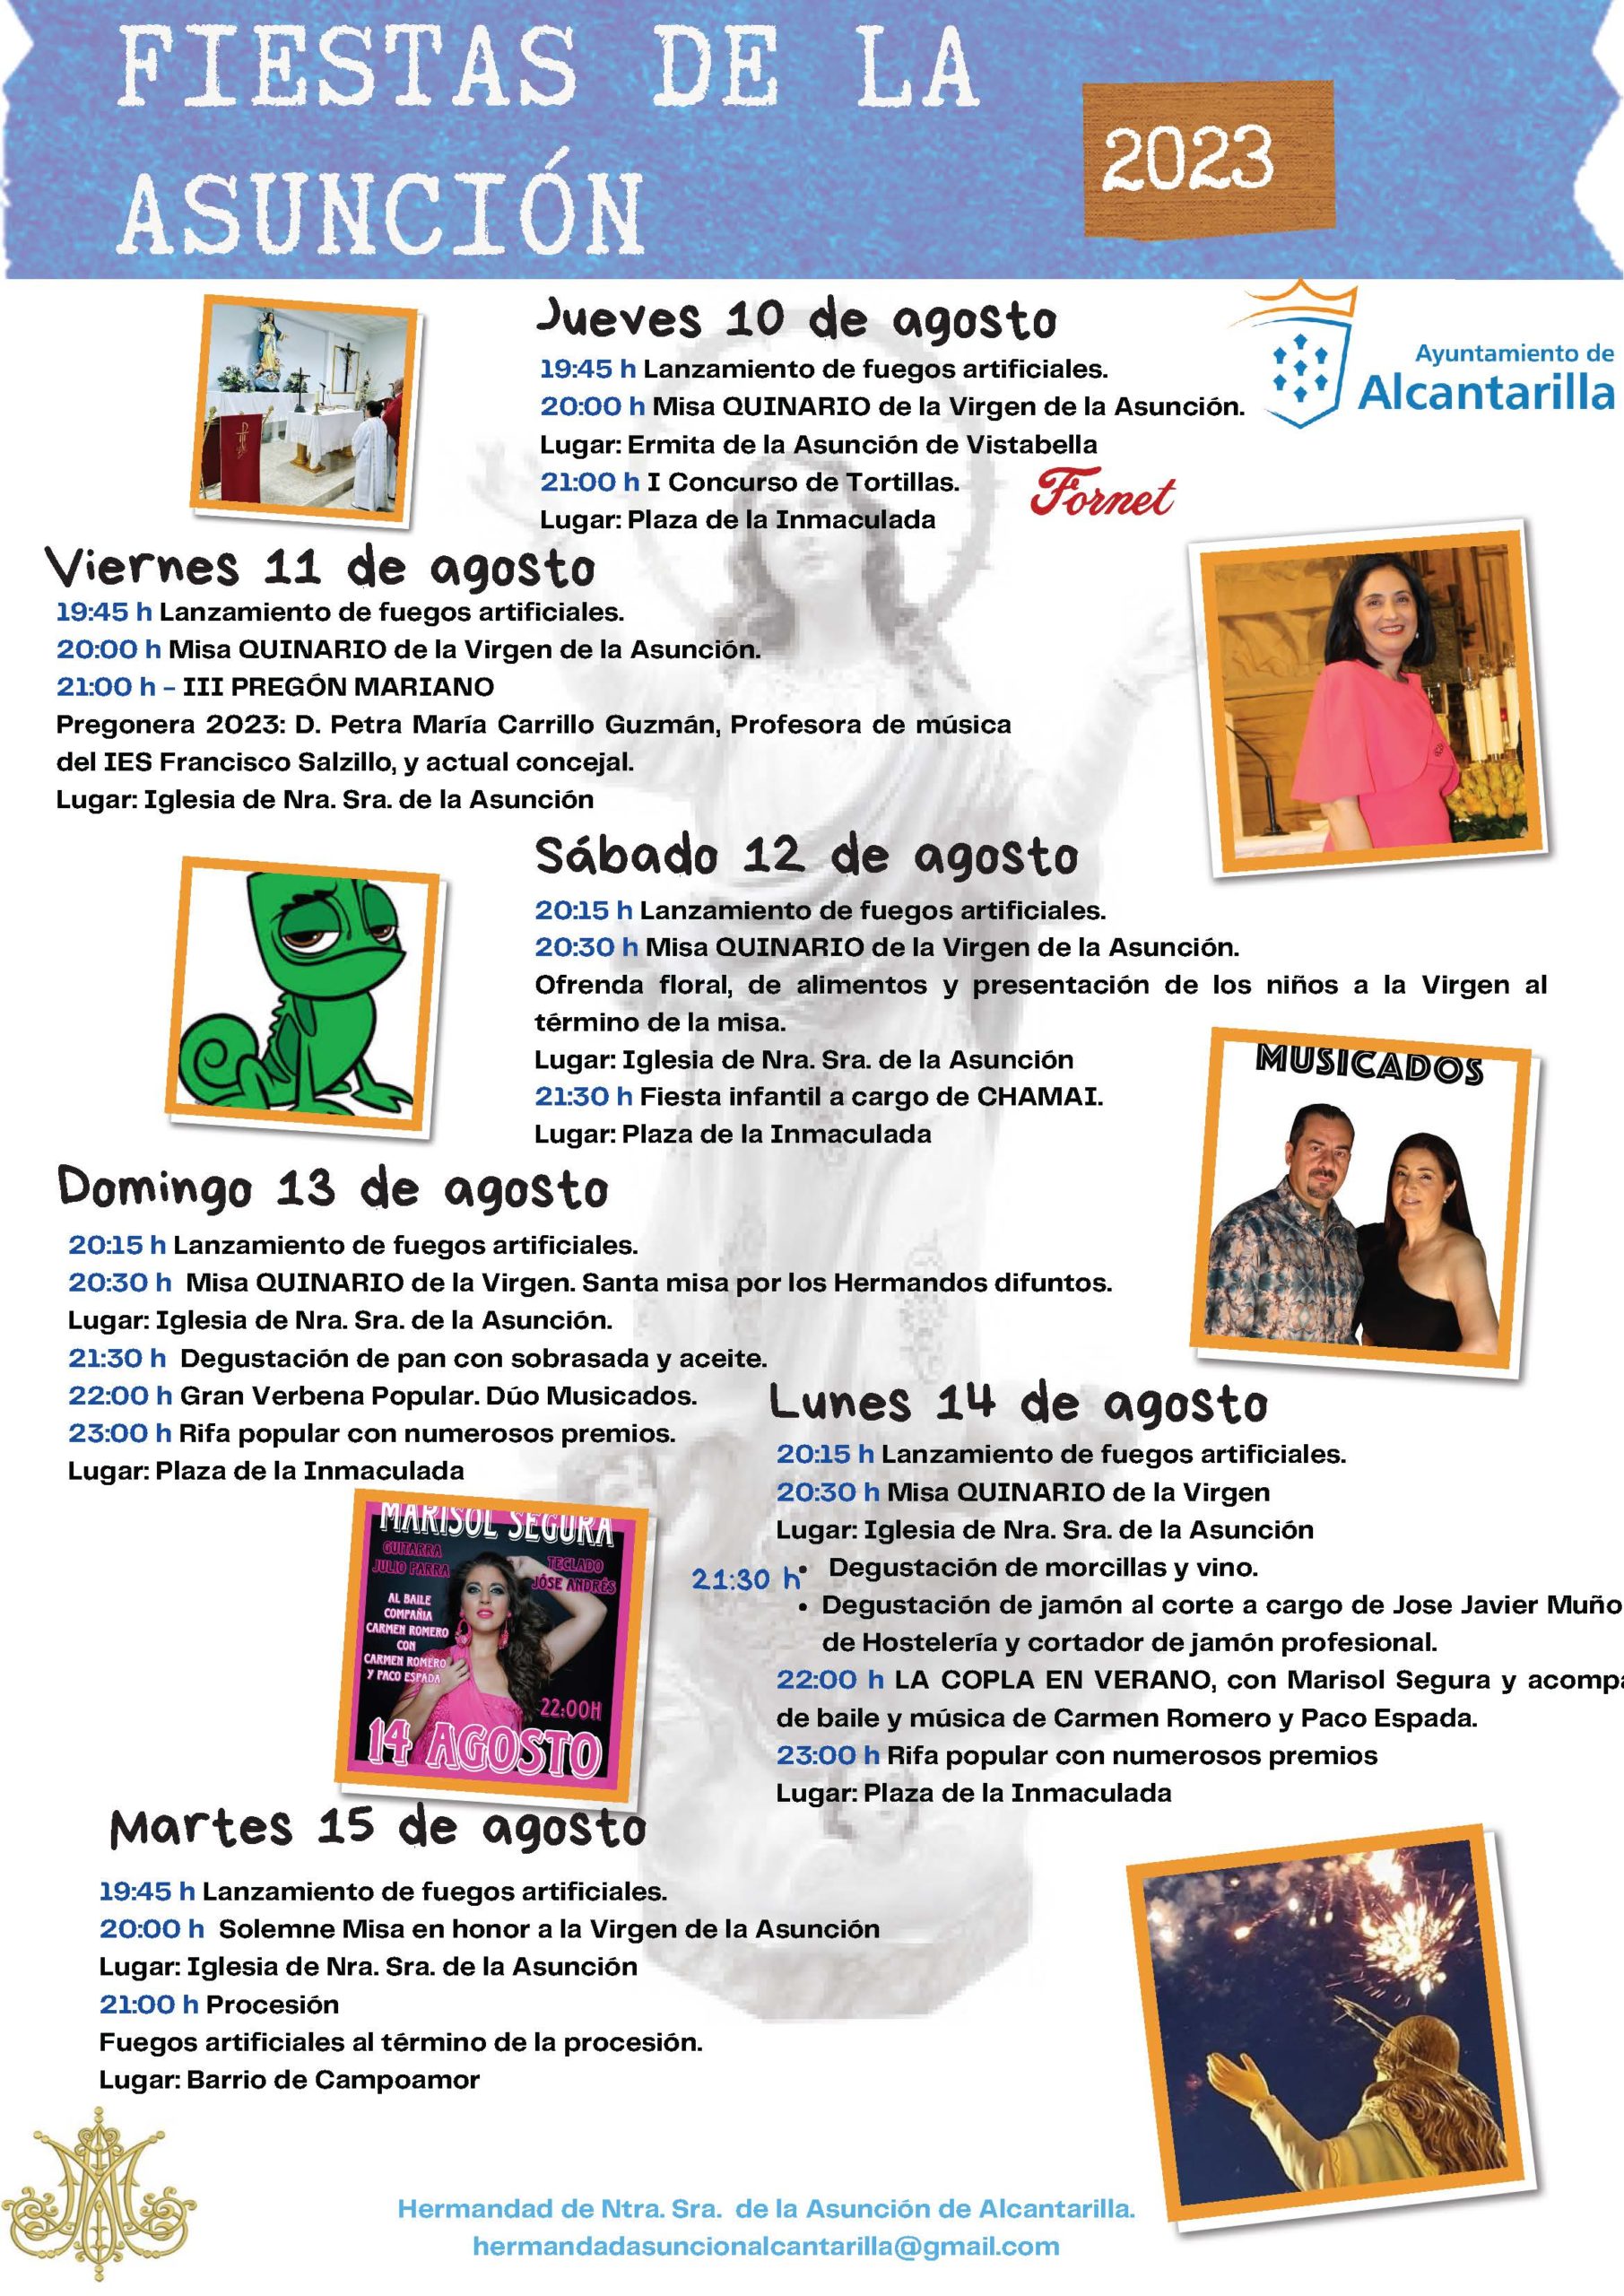 Fiesta En Murcia 2023 Fiestas de la Asunción 2023 - Ayuntamiento de Alcantarilla